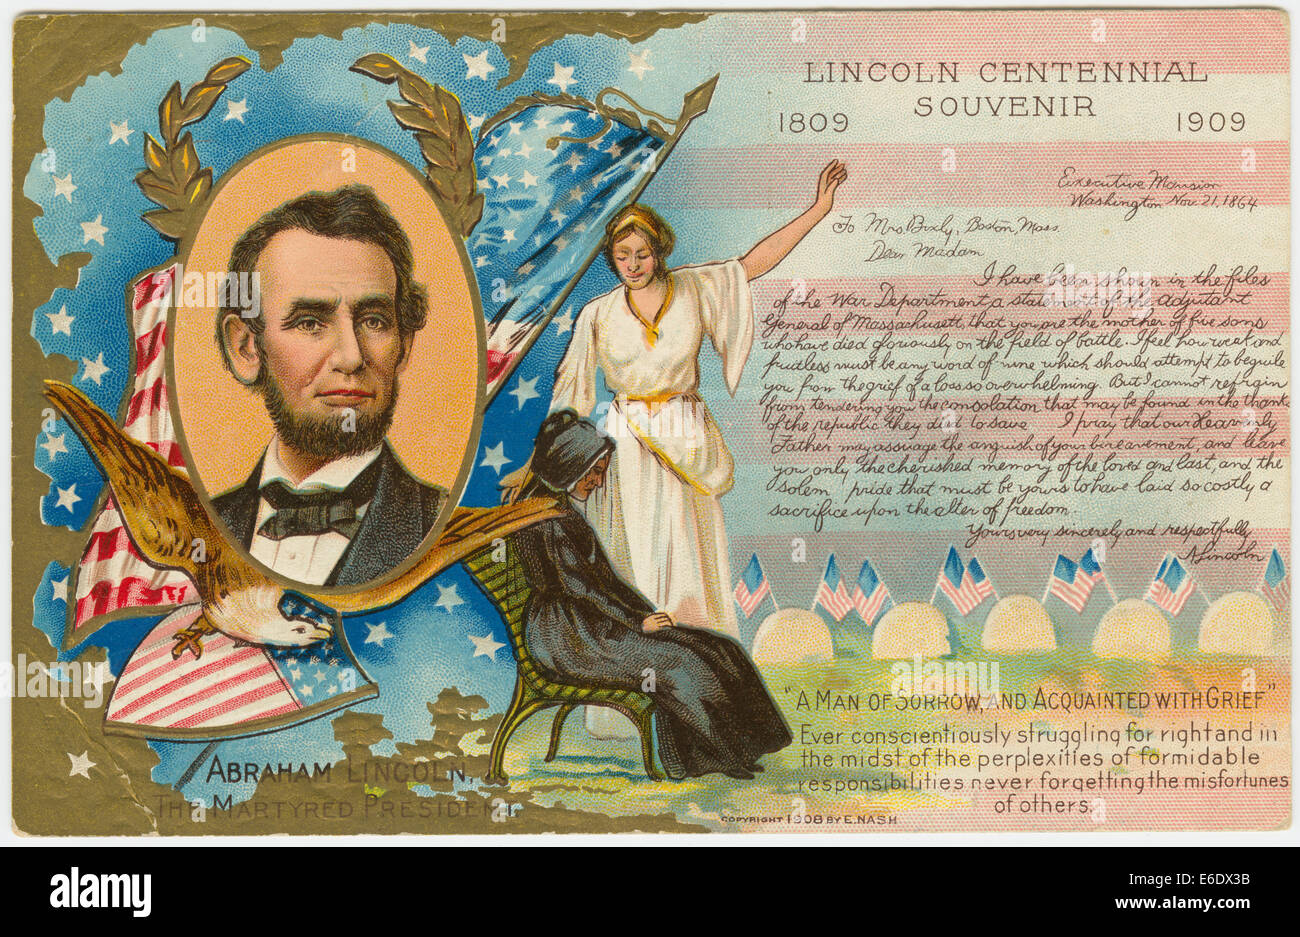 Lincoln Centennial Souvenir 1809-1909, Abraham Lincoln il presidente martire, cartolina, 1909 Foto Stock